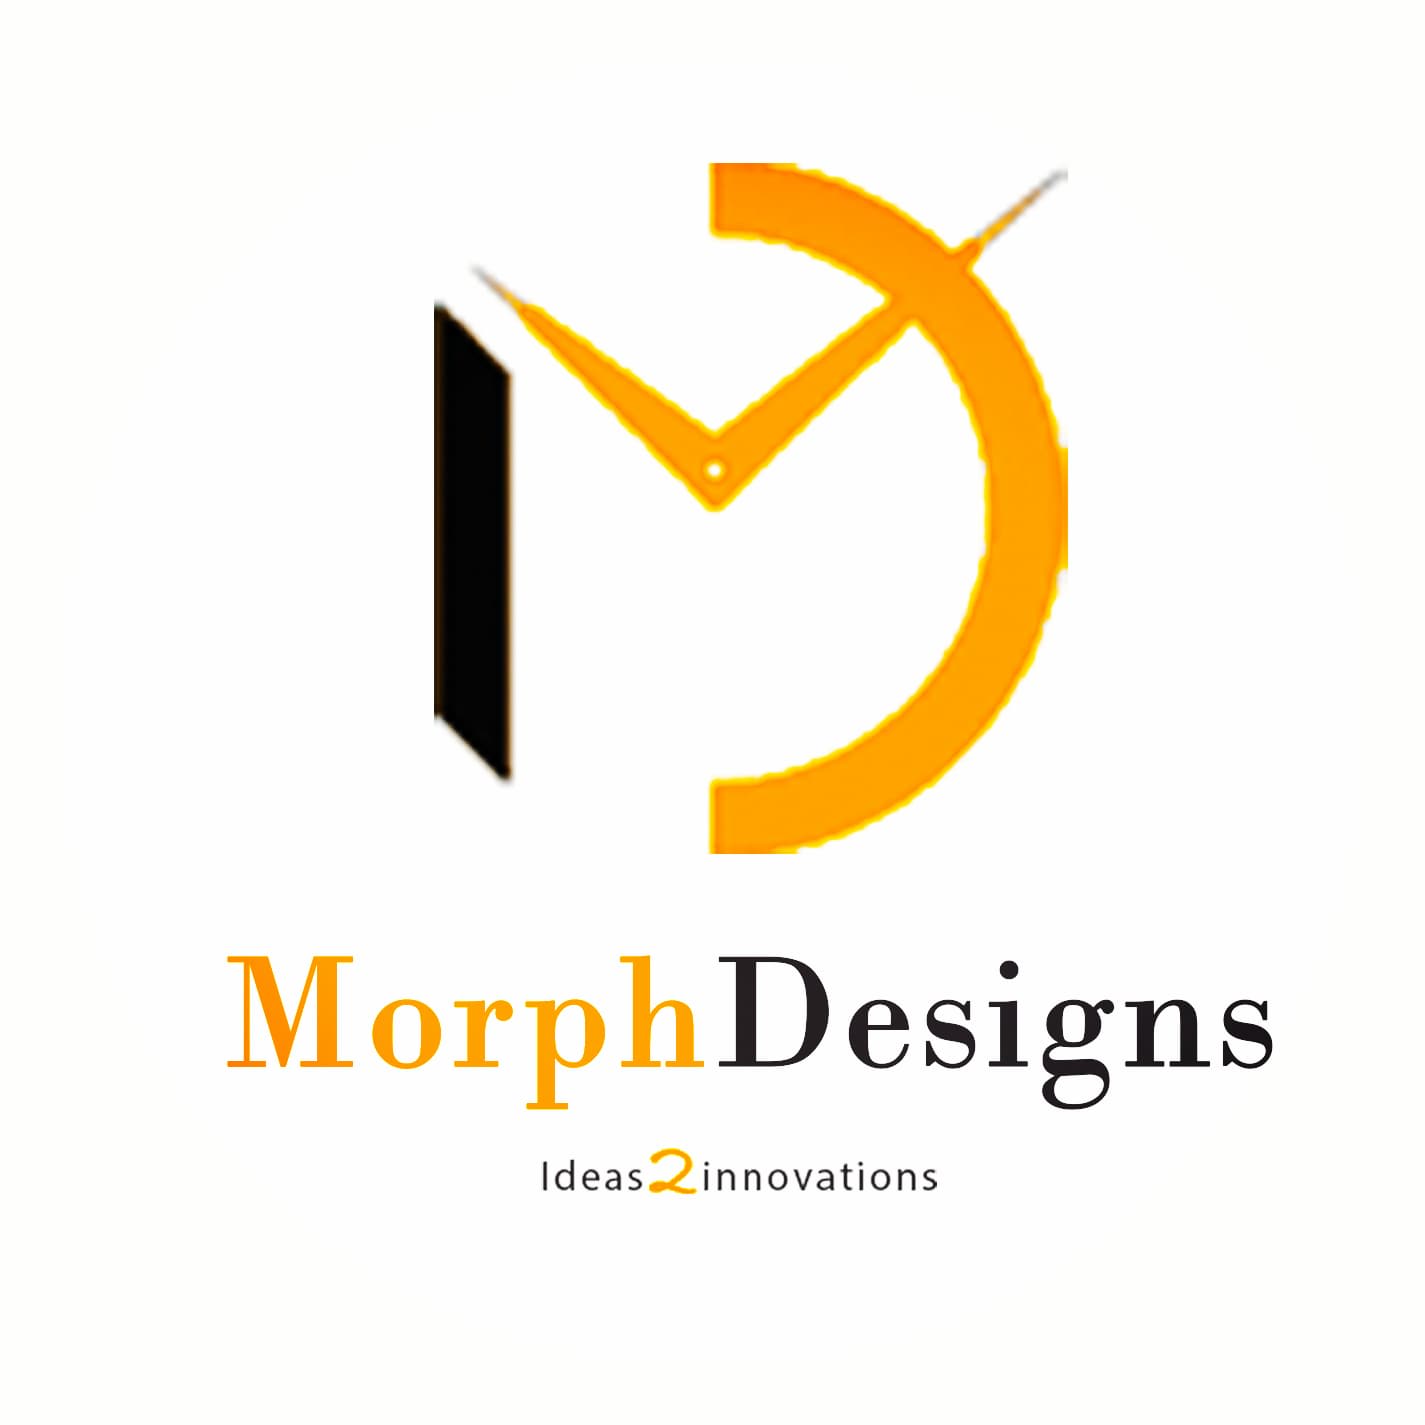 Morph Designs